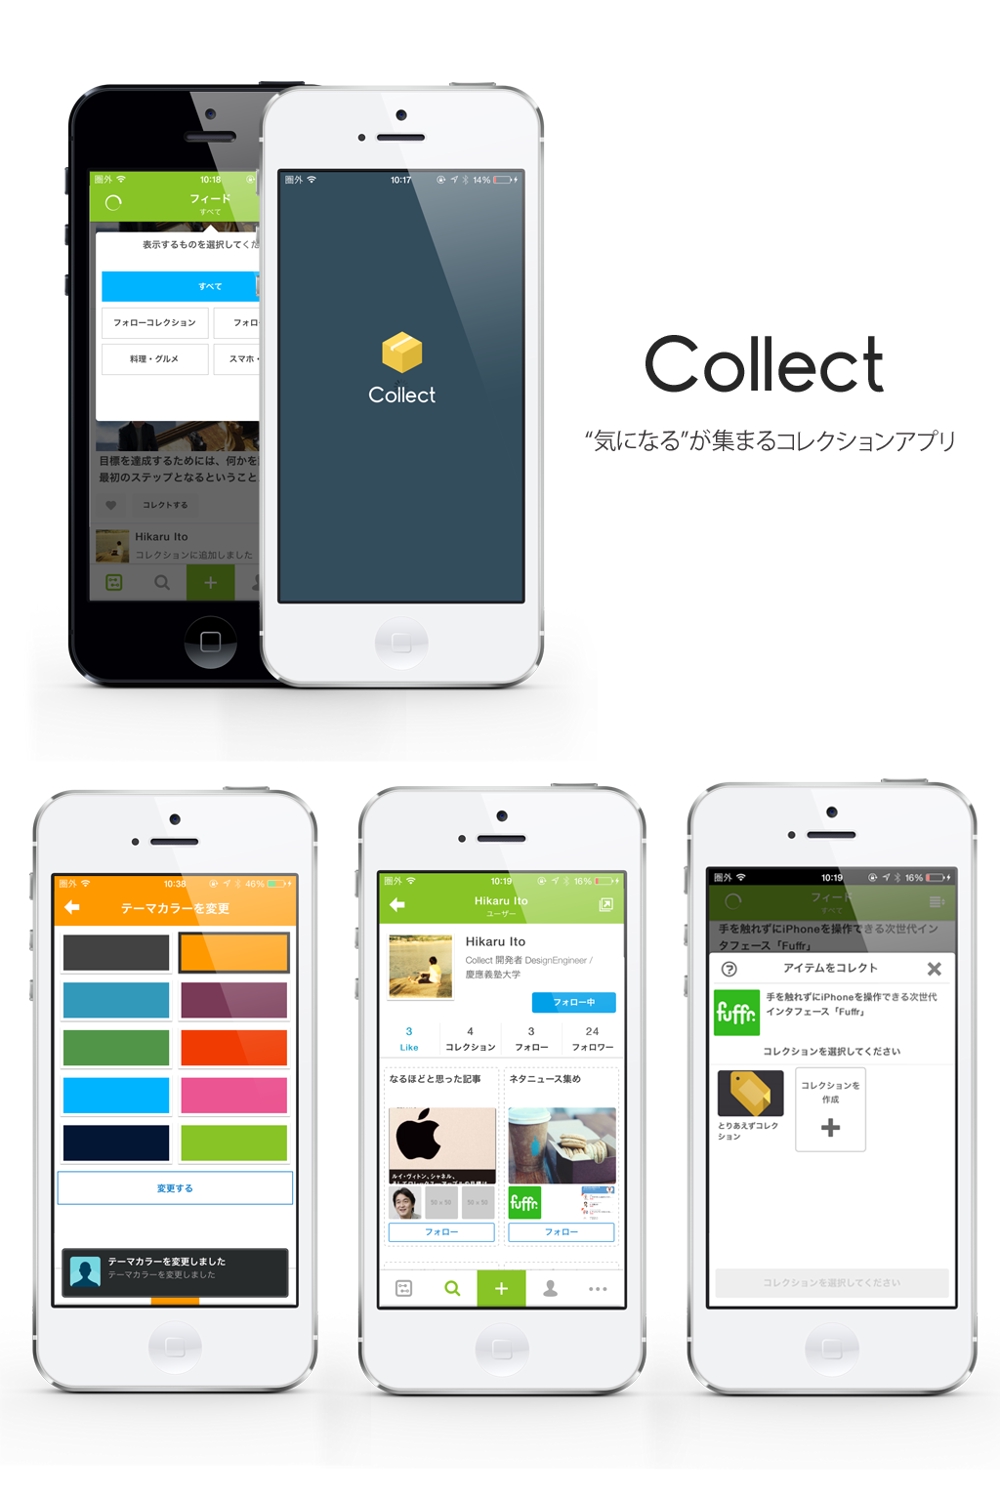 コレクション型キュレーションアプリ「Collect」開発・デザイン